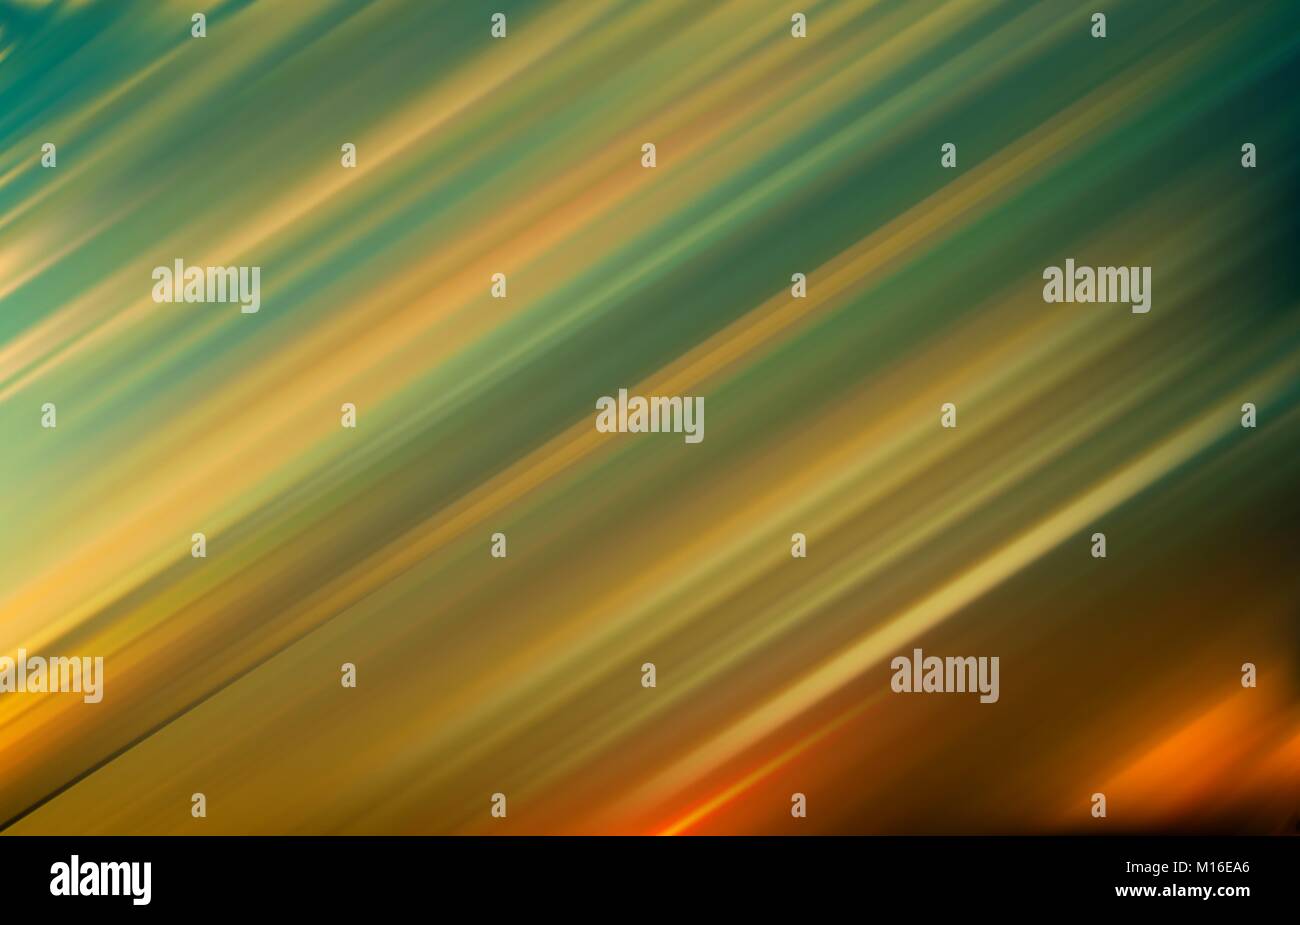 Abstract green motion blur sullo sfondo illustrazione vettoriale Illustrazione Vettoriale